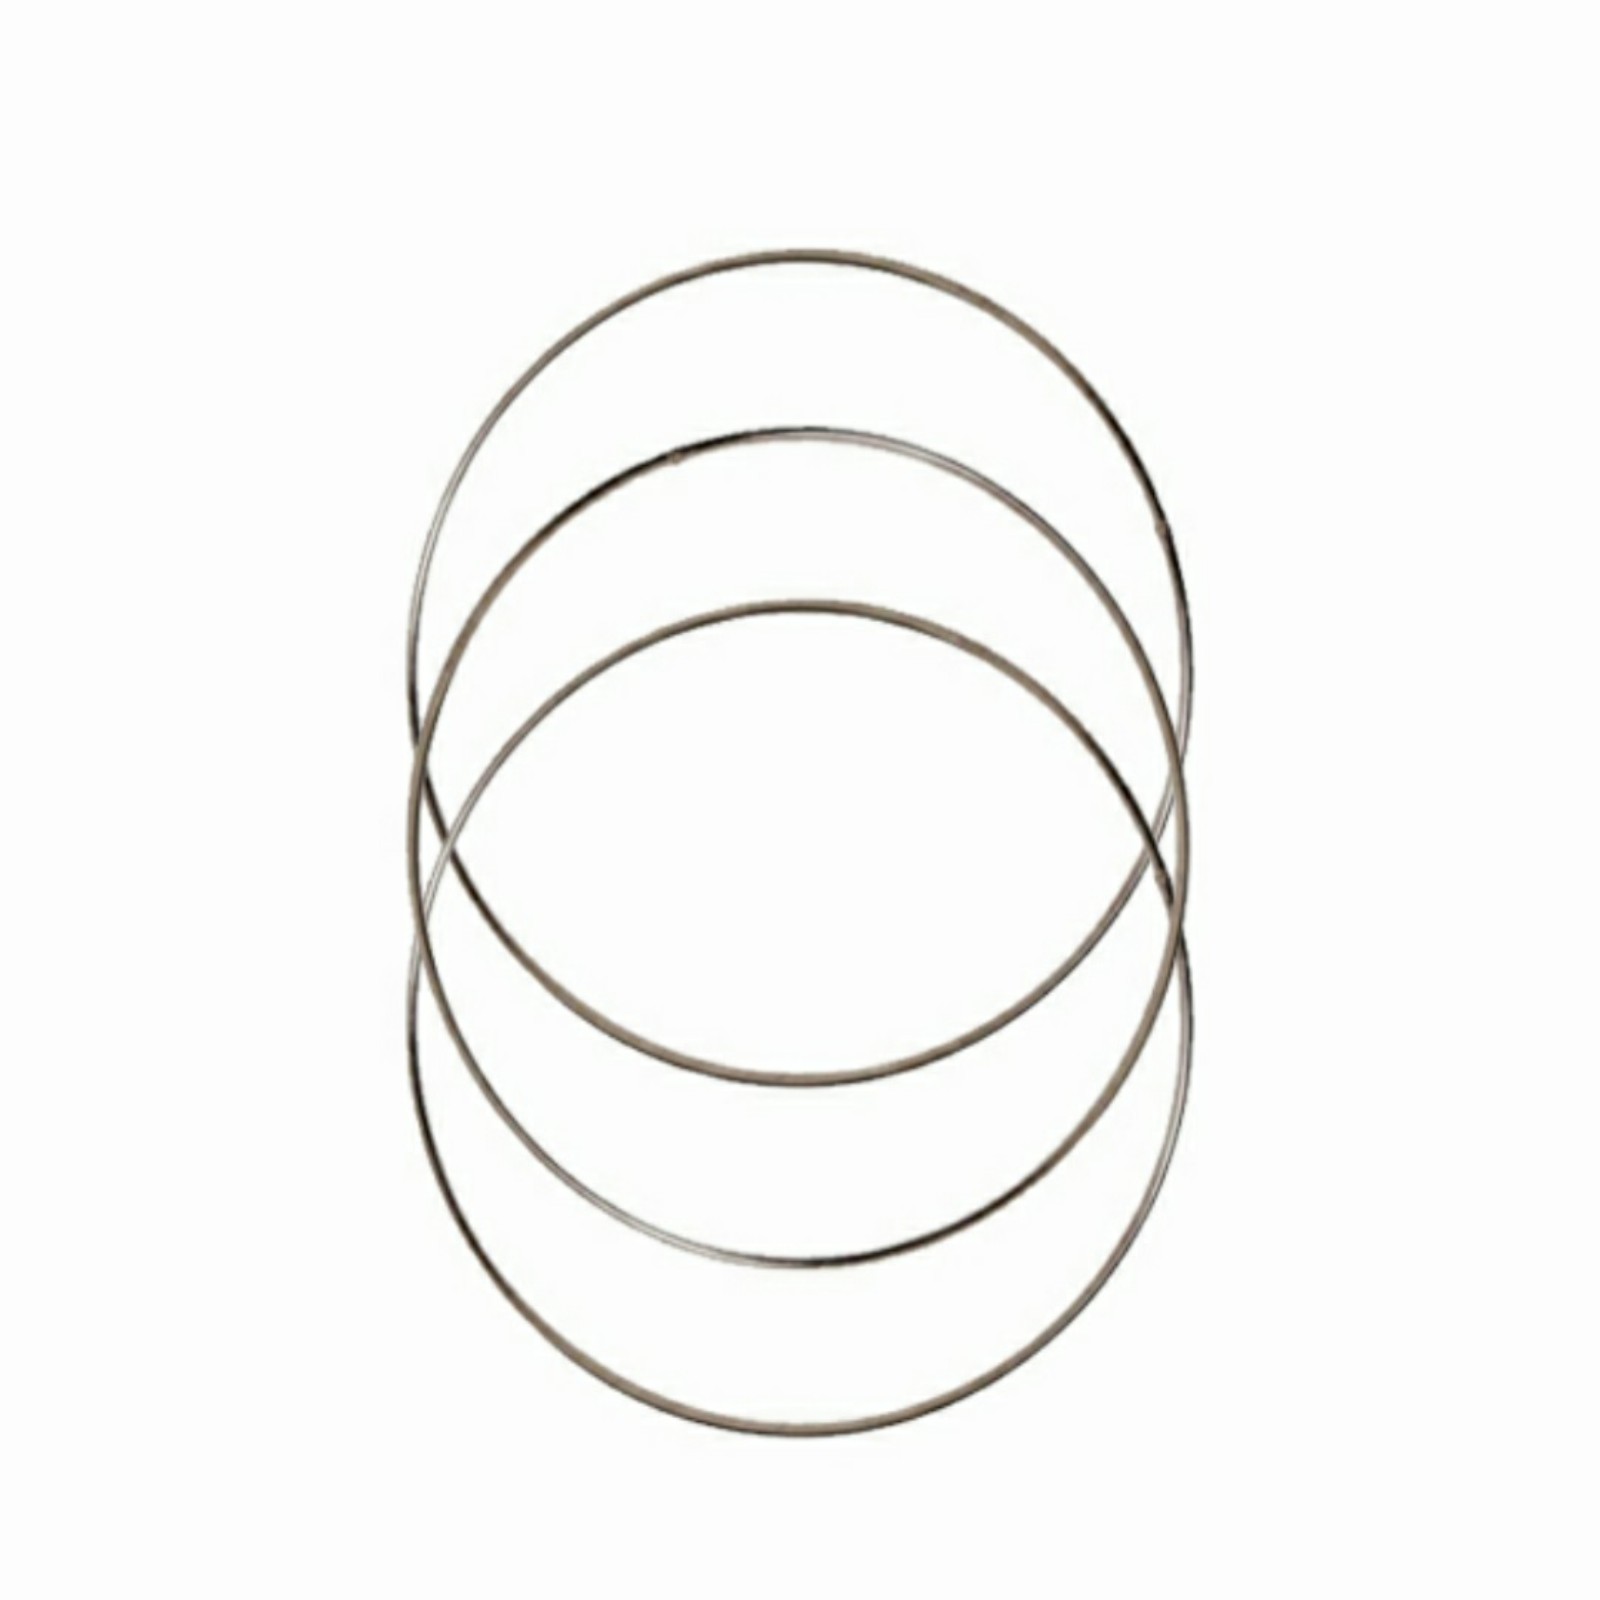 حلقه دریم کچر مدل 025 بسته 3 عددی